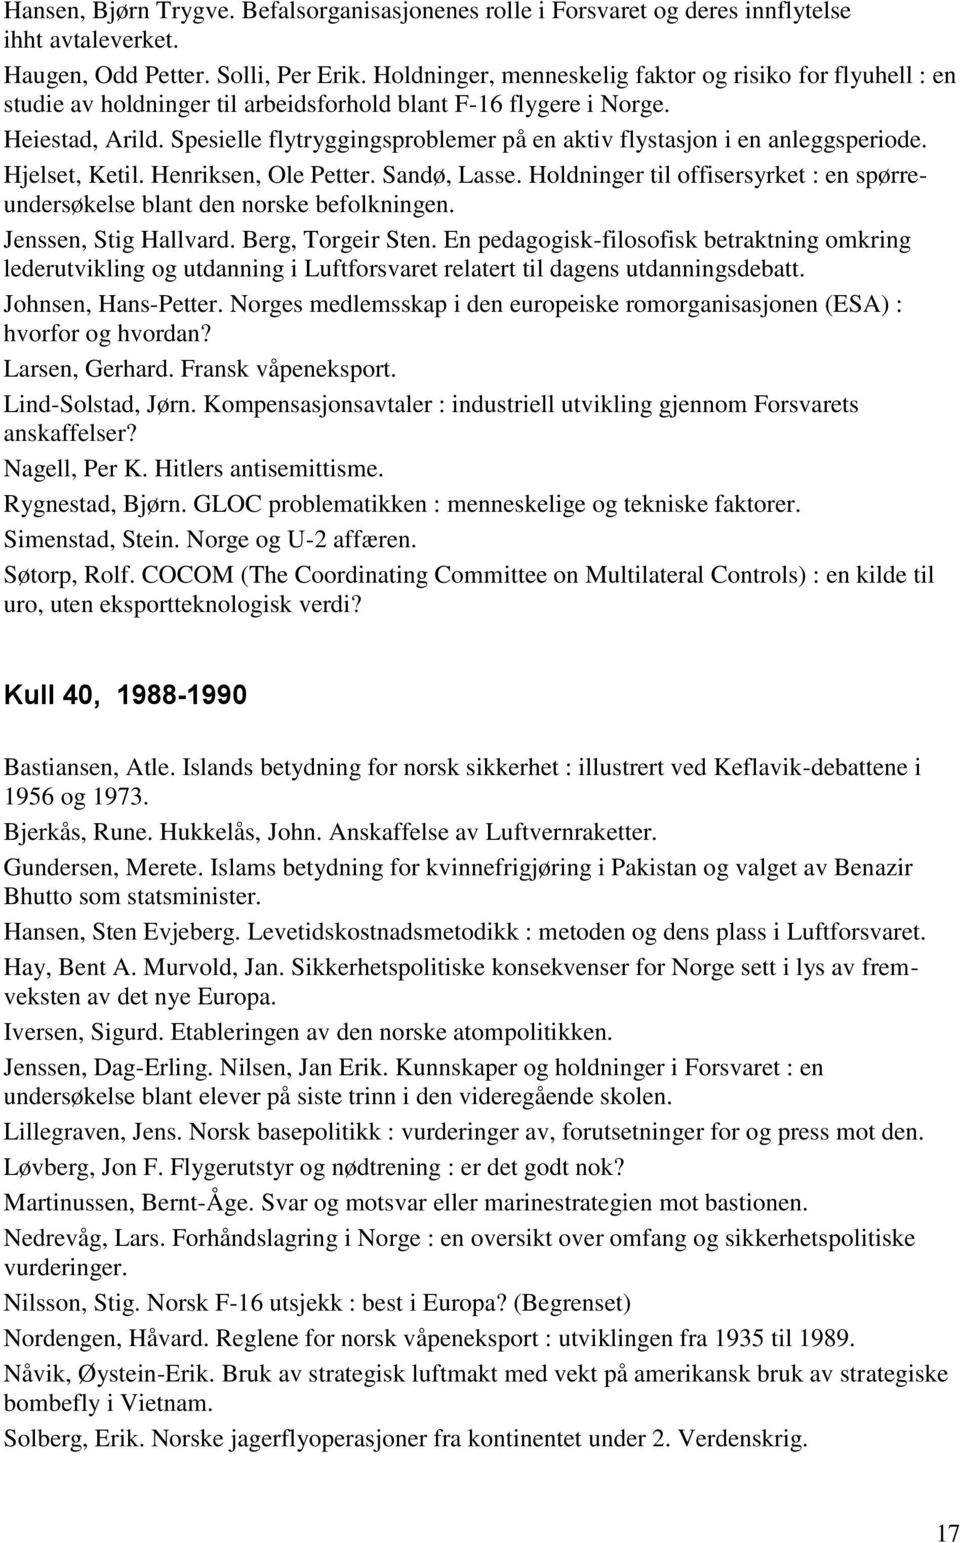 Spesielle flytryggingsproblemer på en aktiv flystasjon i en anleggsperiode. Hjelset, Ketil. Henriksen, Ole Petter. Sandø, Lasse.